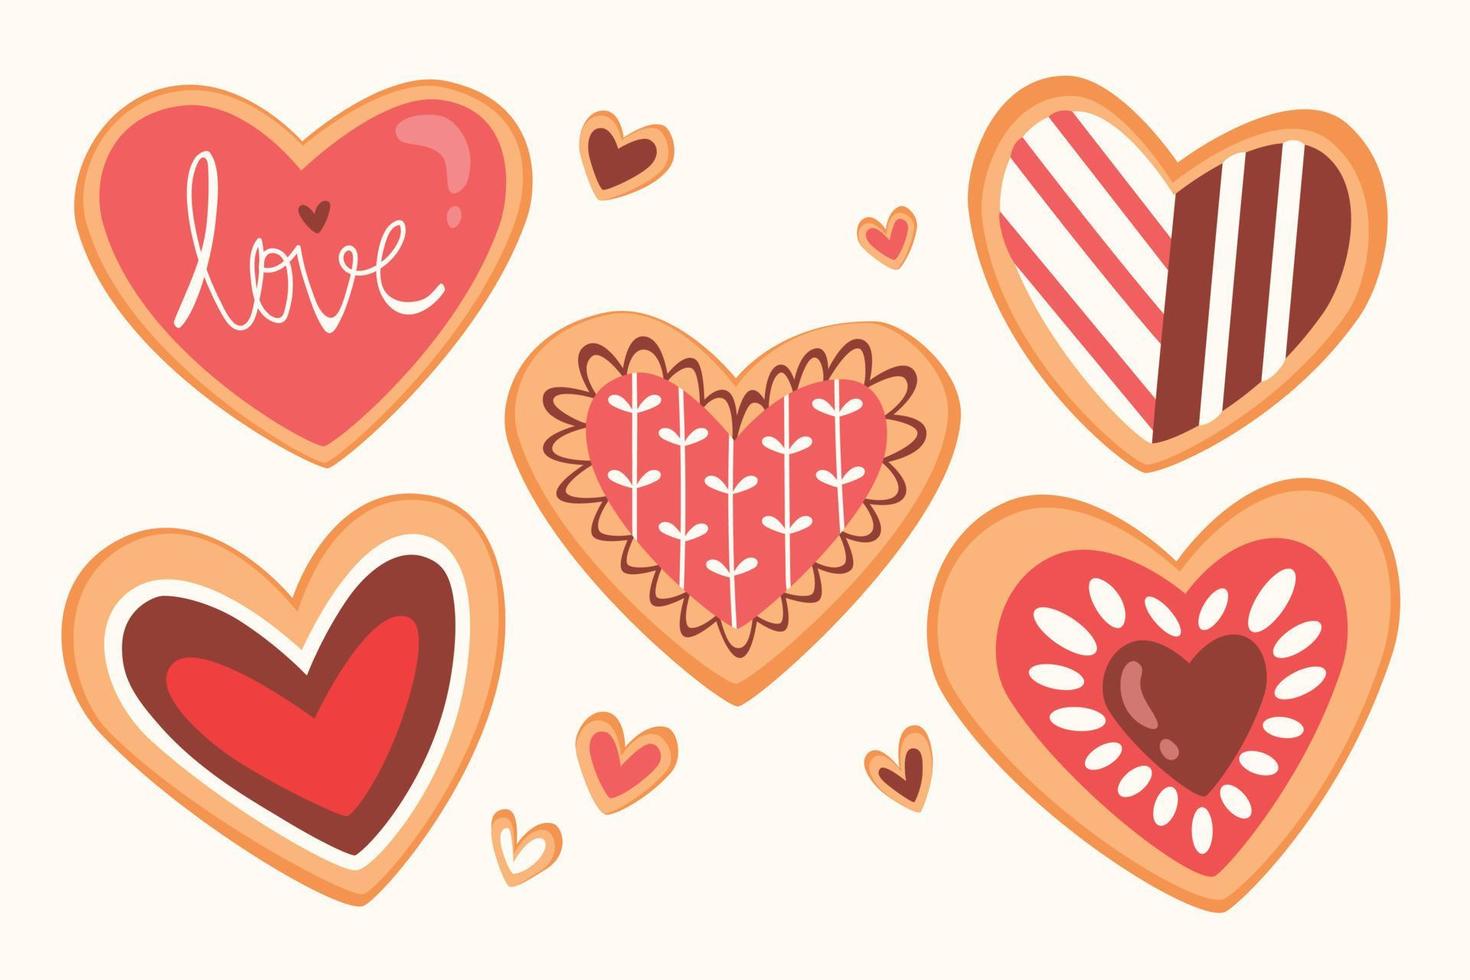 hart vormig Valentijn koekjes vector afbeeldingen